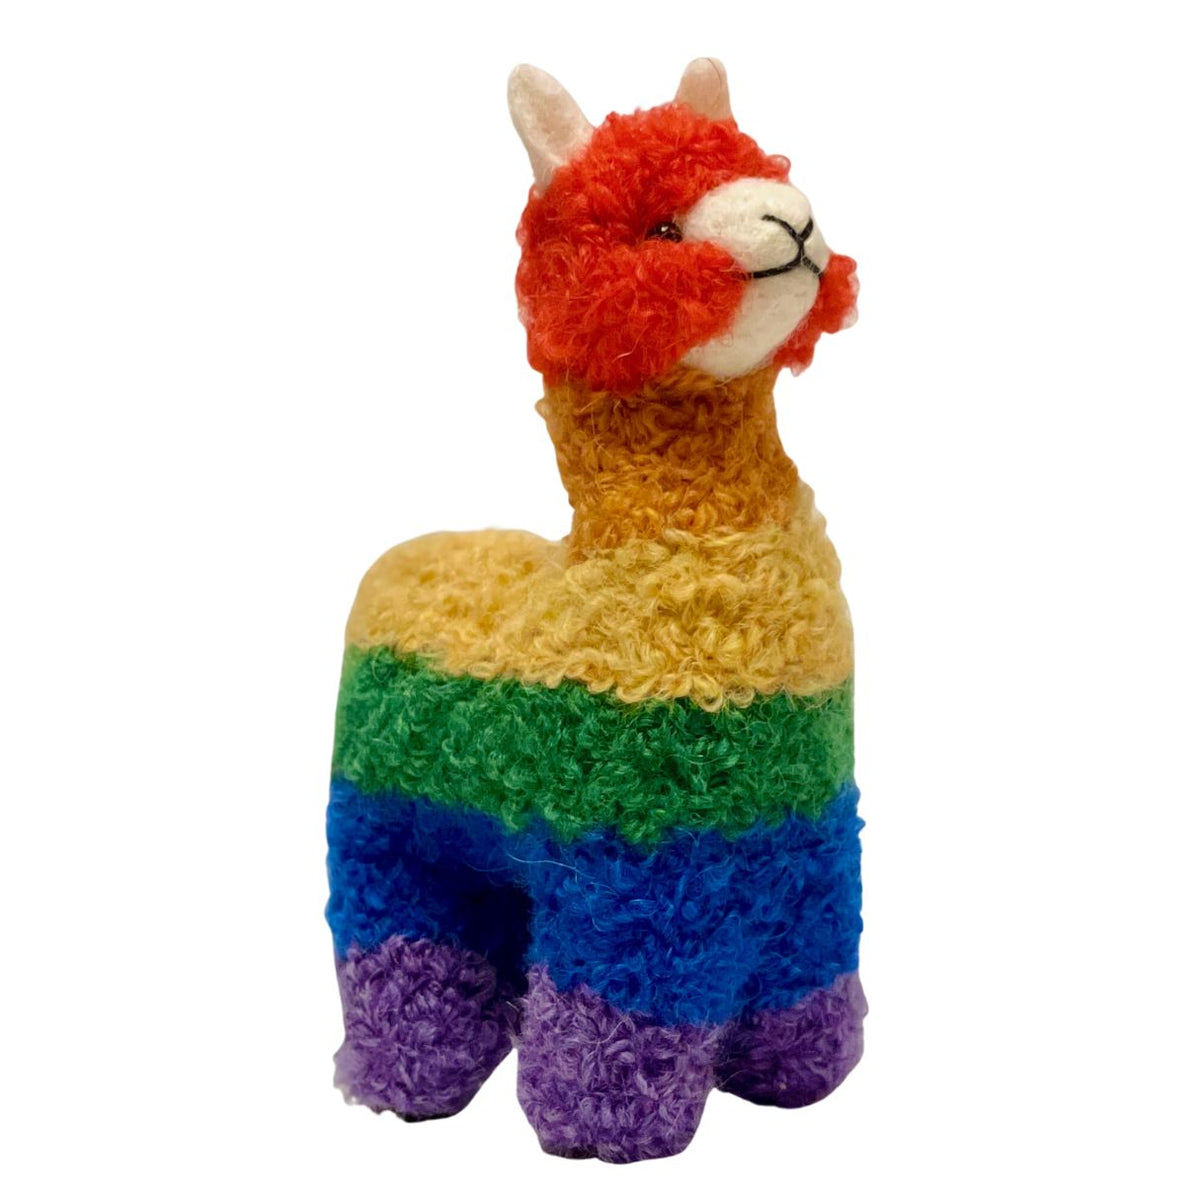 Coloful rainbow striped alpaca ornament